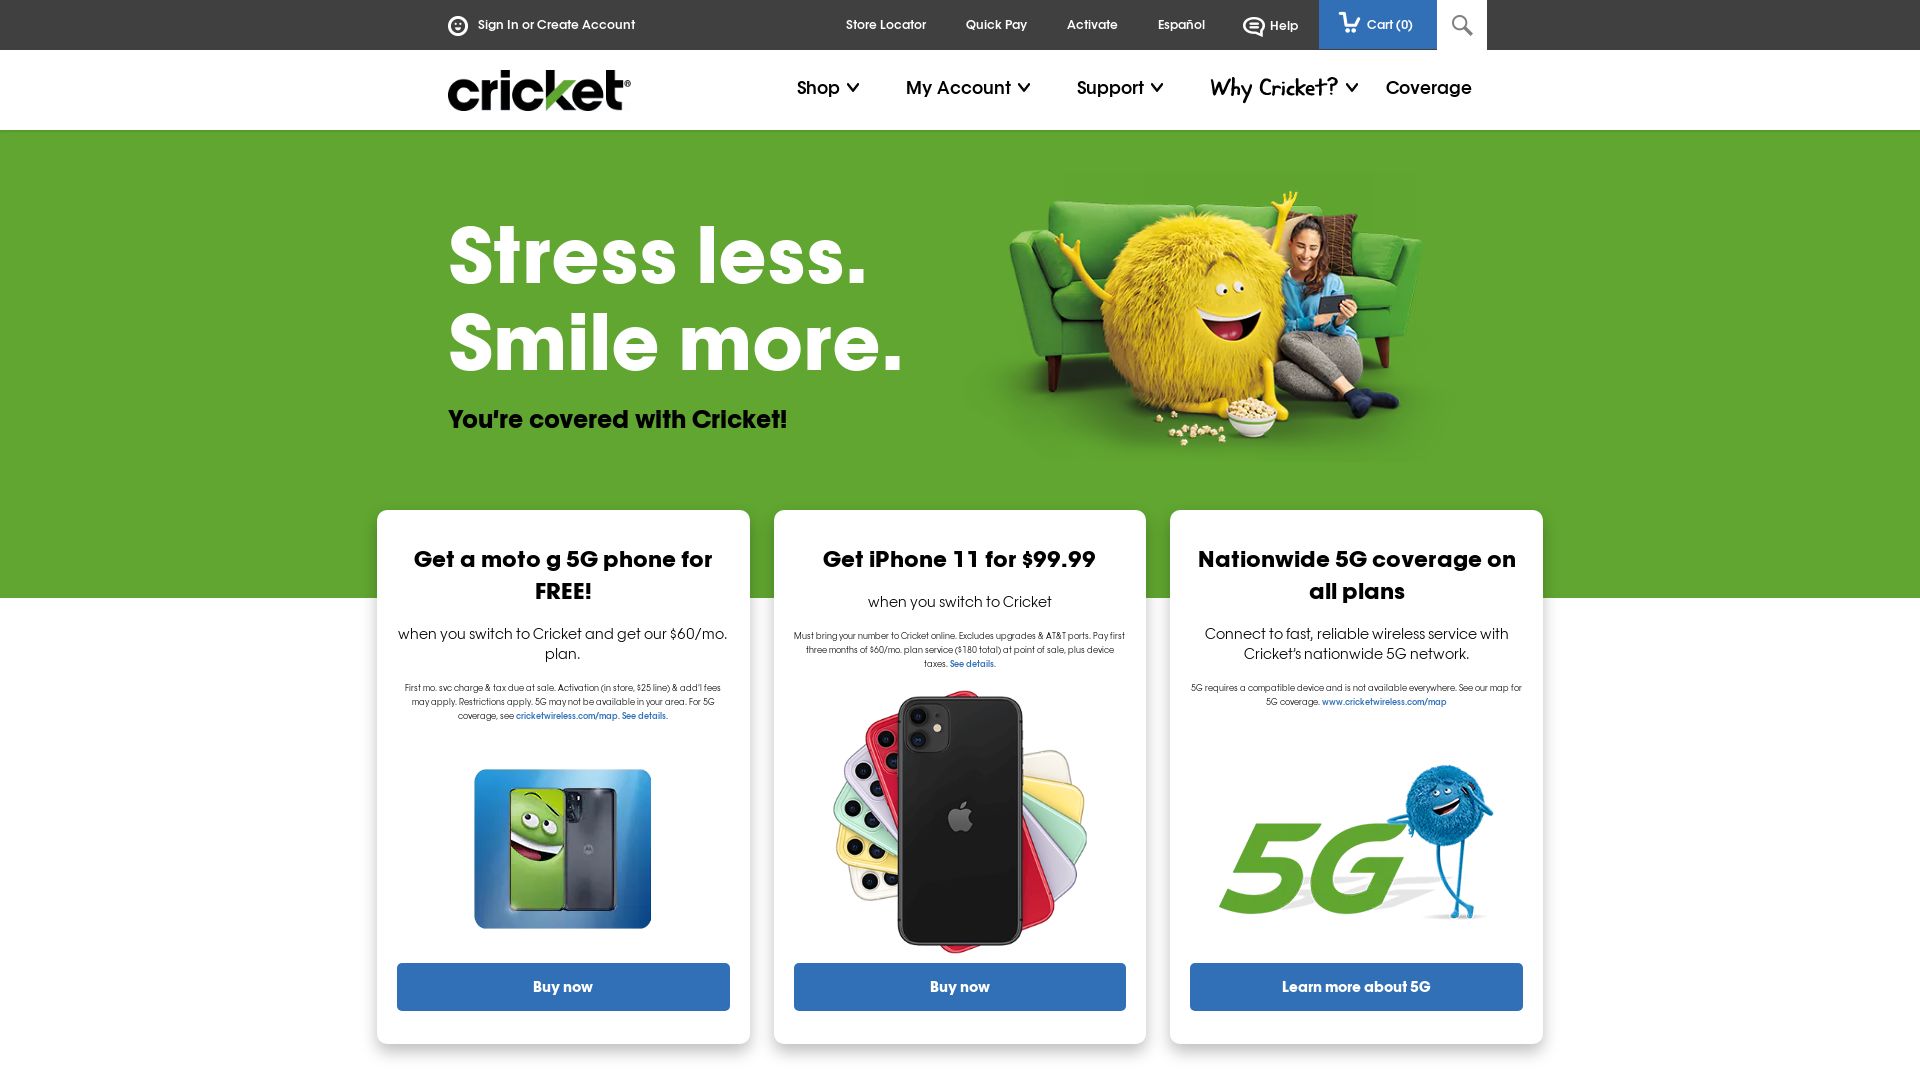 网站状态 cricketwireless.com 是  在线的